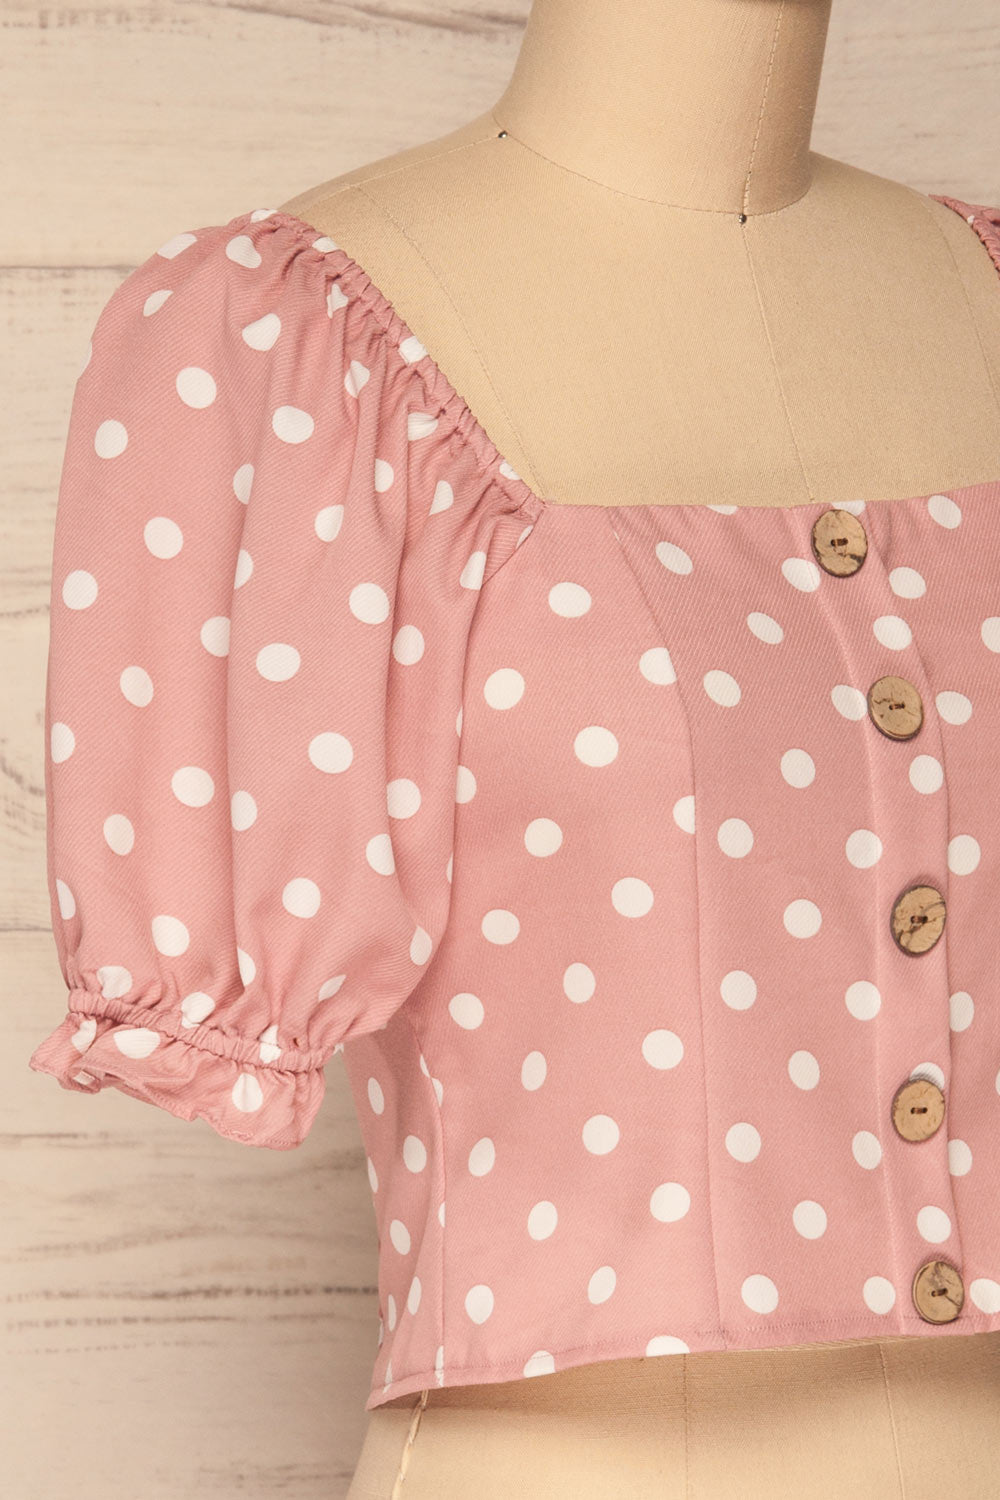 Fallasen Pink & White Polkadot Crop Top | La Petite Garçonne side close up